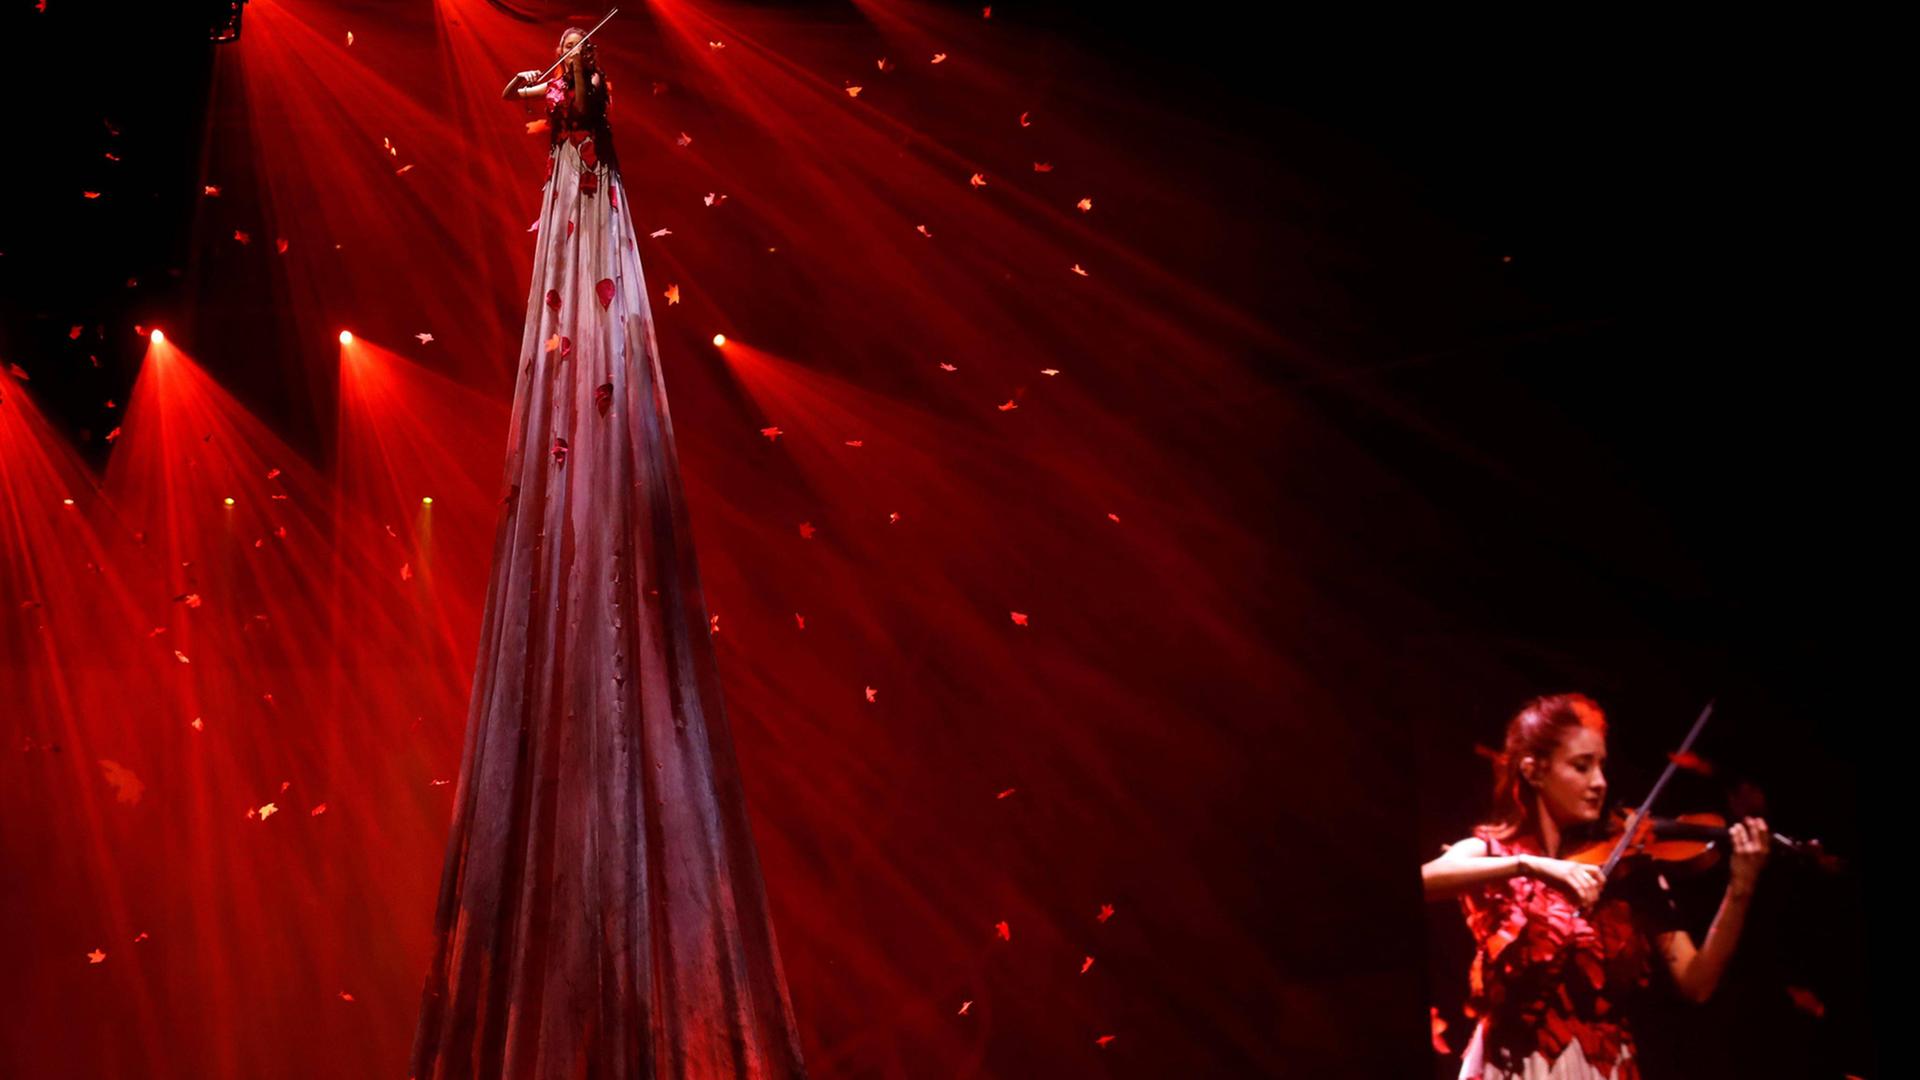 Szene aus der Show "Game of Thrones Live Experience", welche die Serienmusik live präsentiert: eine Frau spielt vor rotem Licht mit Glitzerelementen auf Stelzen ein Streichinstrument, eine andere spielt im Vordergrund ein Streichinstrument.